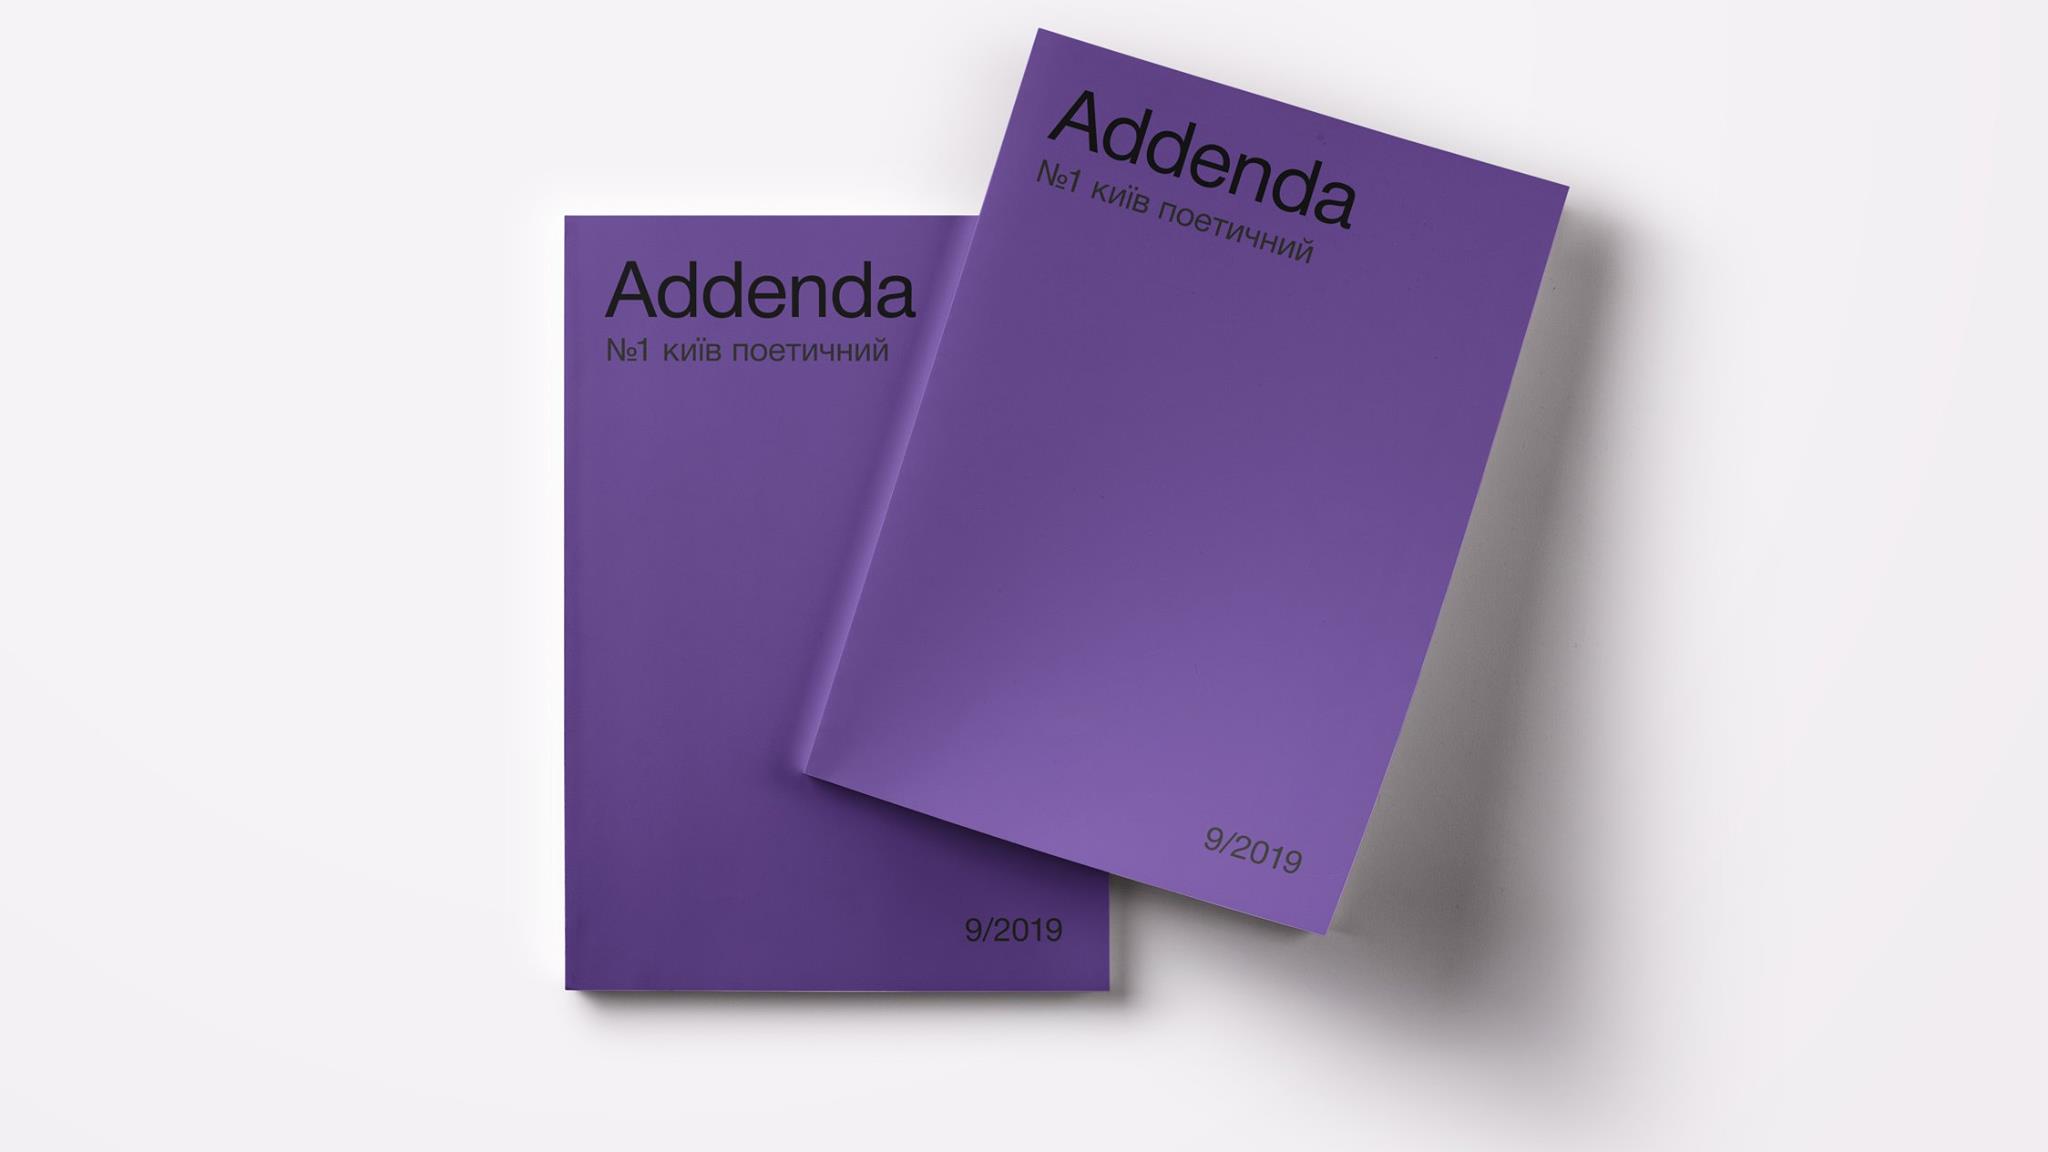 «Київ поетичний», Addenda Press